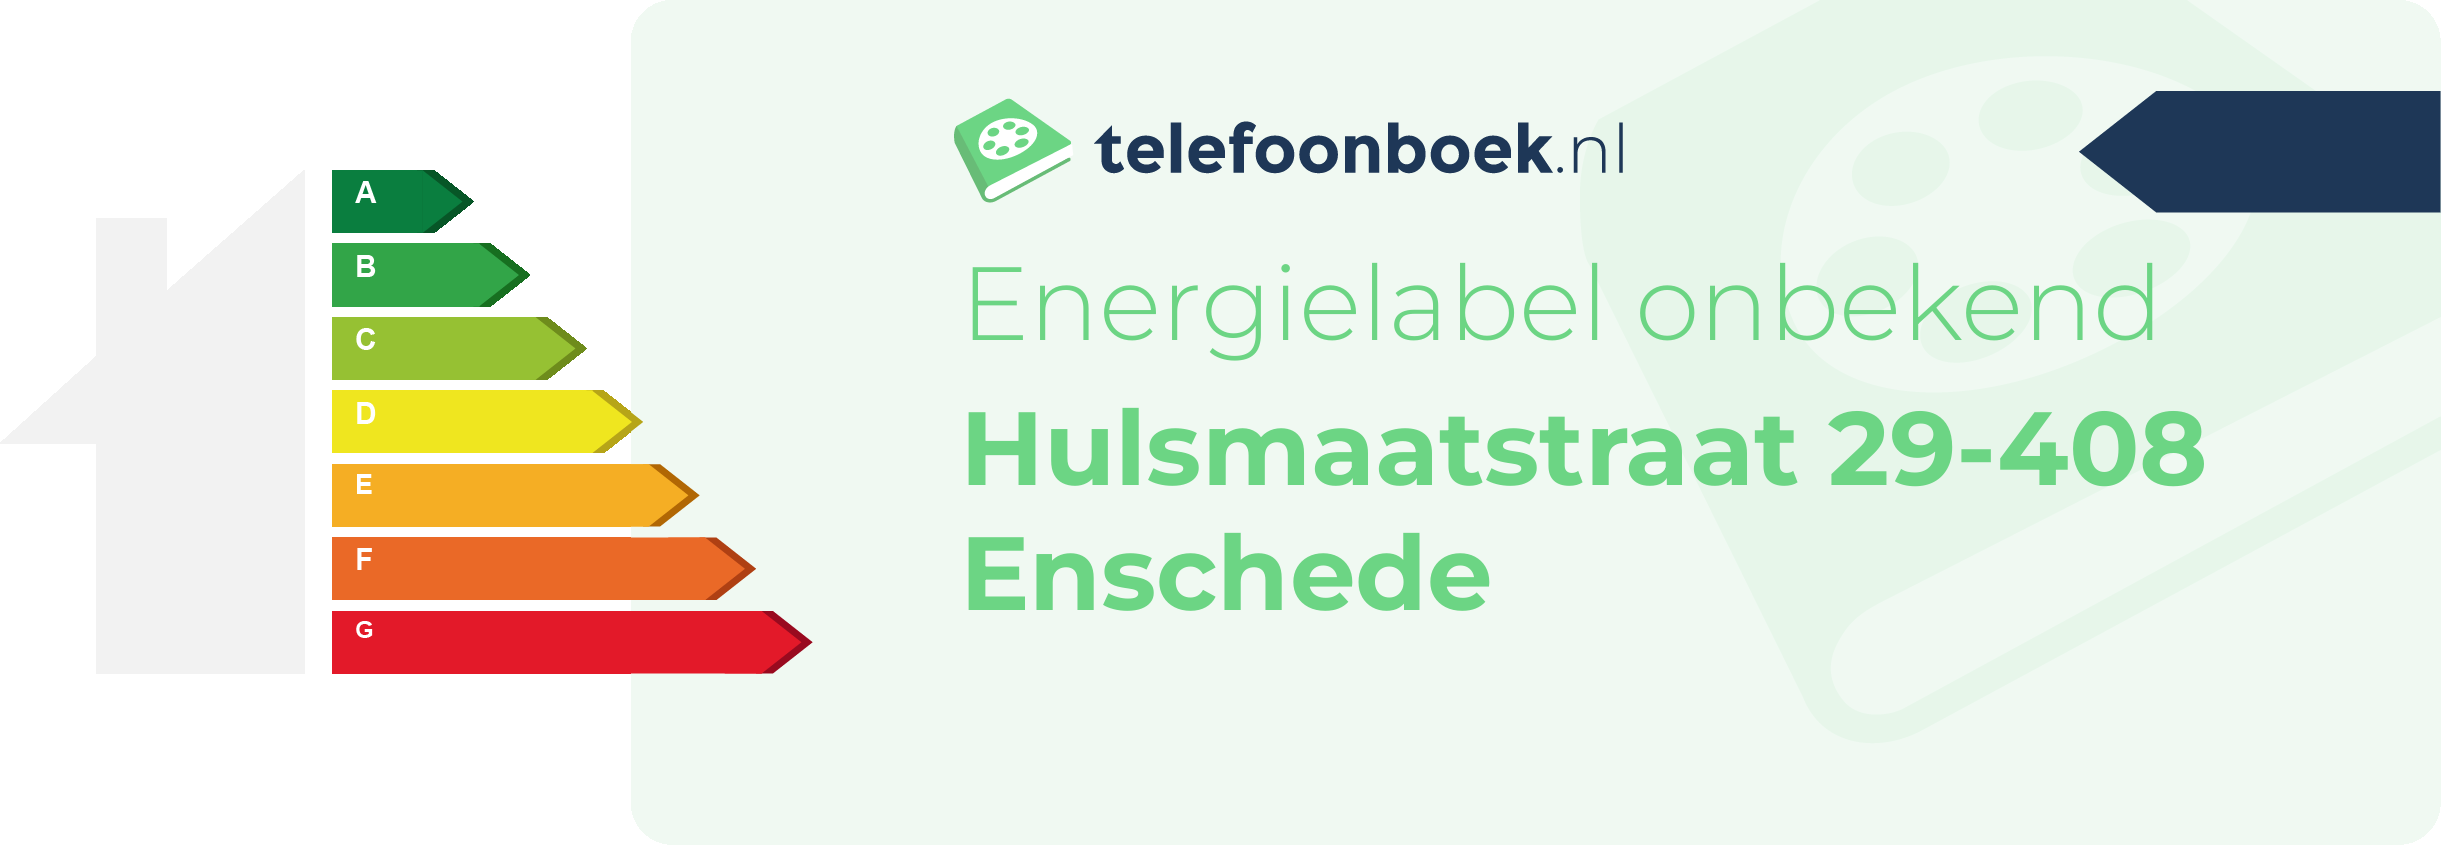 Energielabel Hulsmaatstraat 29-408 Enschede